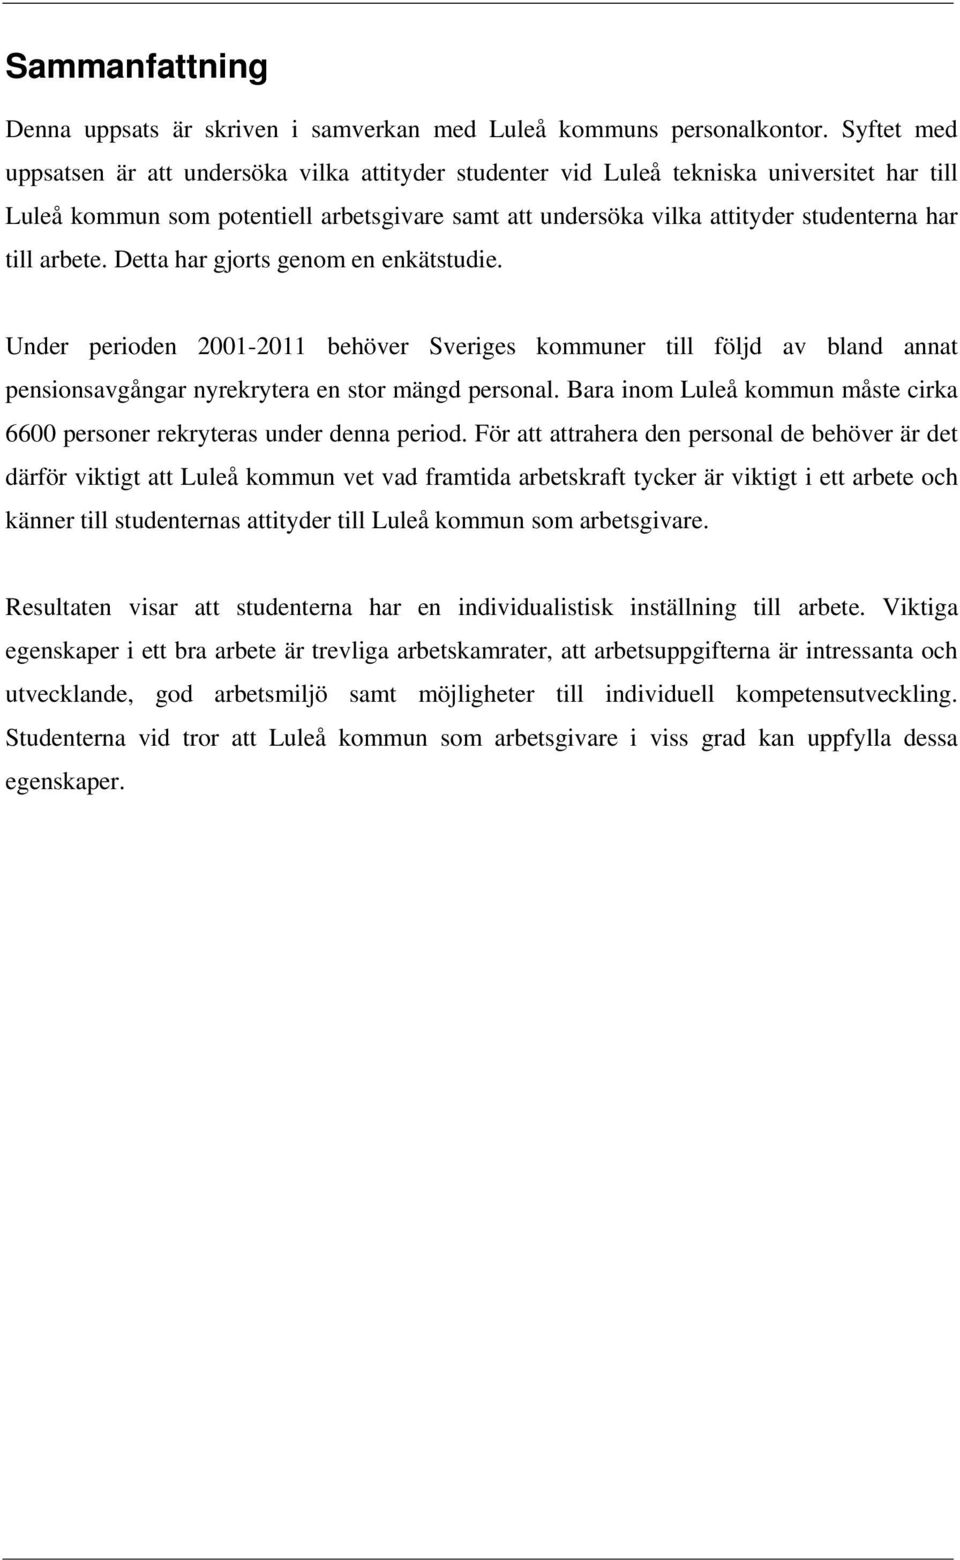 Detta har gjort genom en enkättudie. Under perioden 2001-2011 behöver Sverige kommuner till följd av bland annat penionavgångar nyrekrytera en tor mängd peronal.